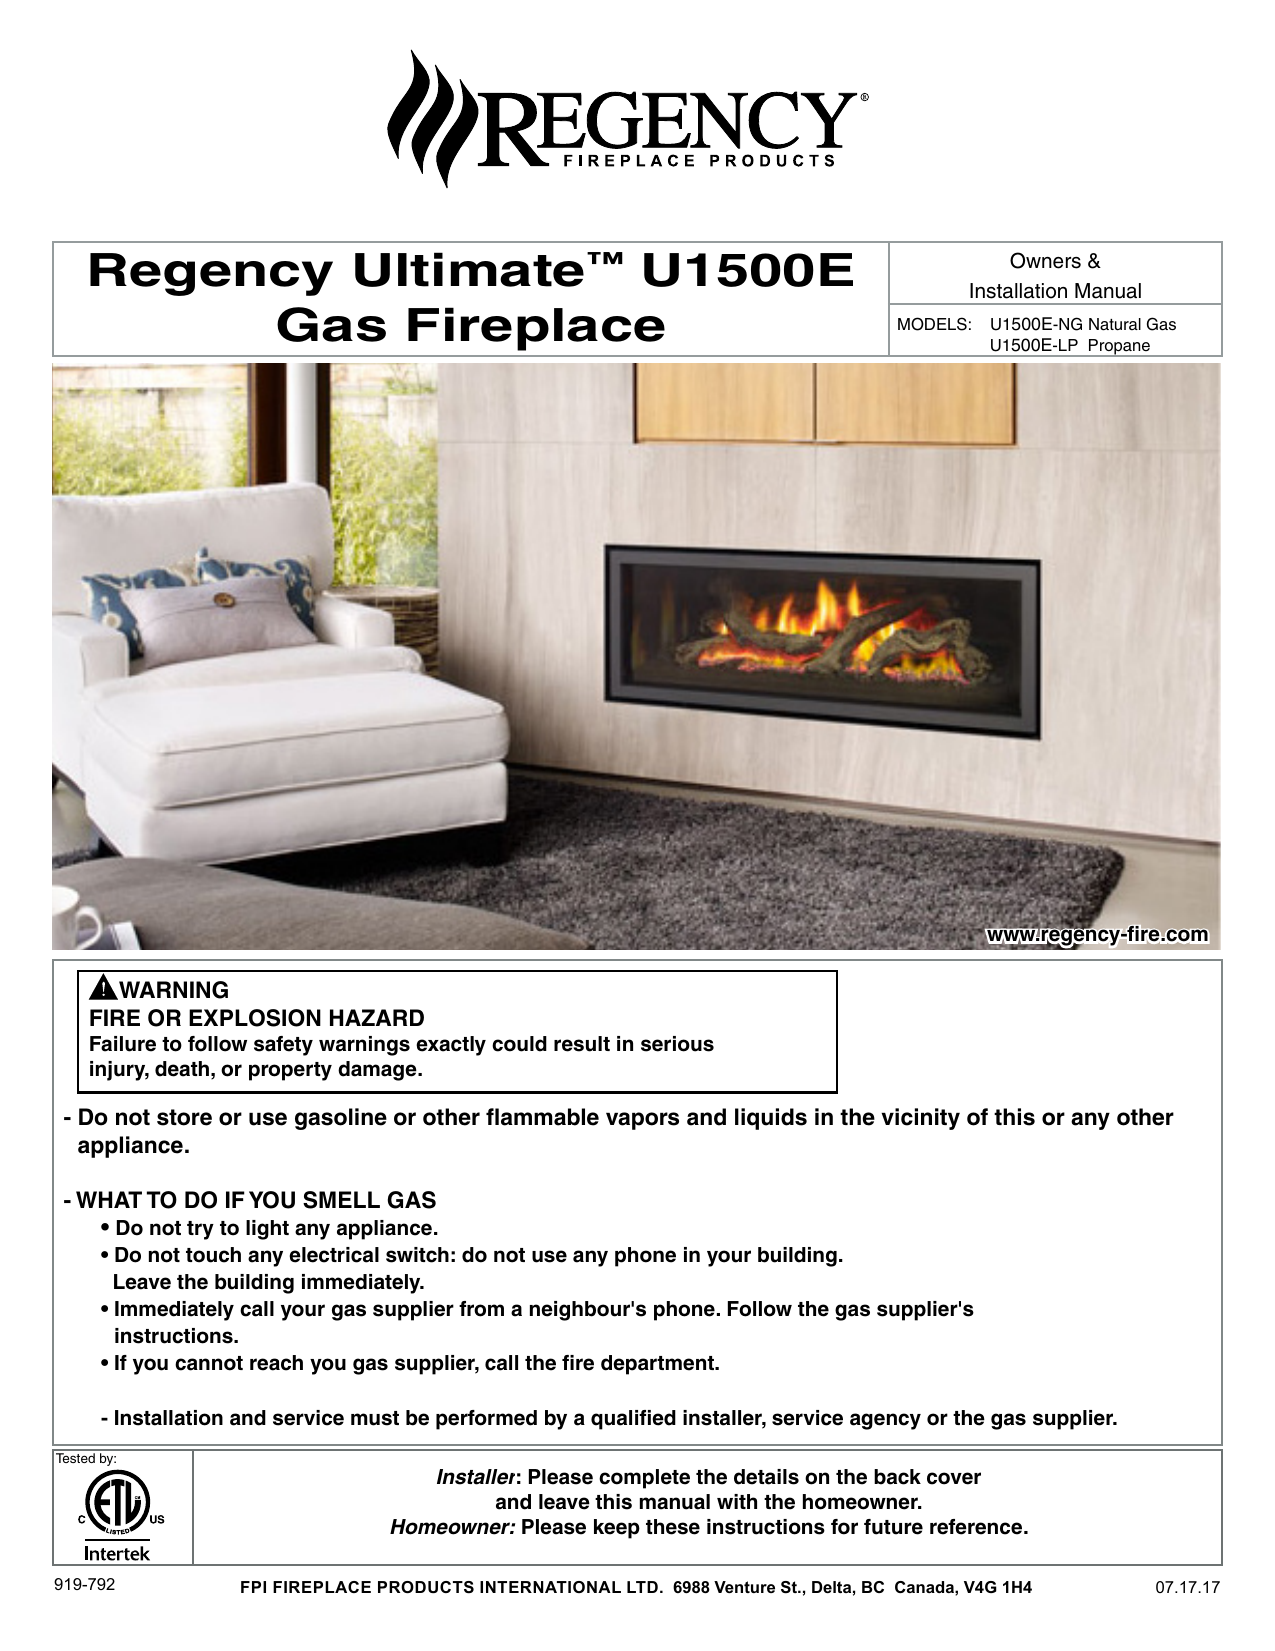 Regency Fireplace Insert Prices New Regency Ultimateâ¢ U1500e Gas Fireplace